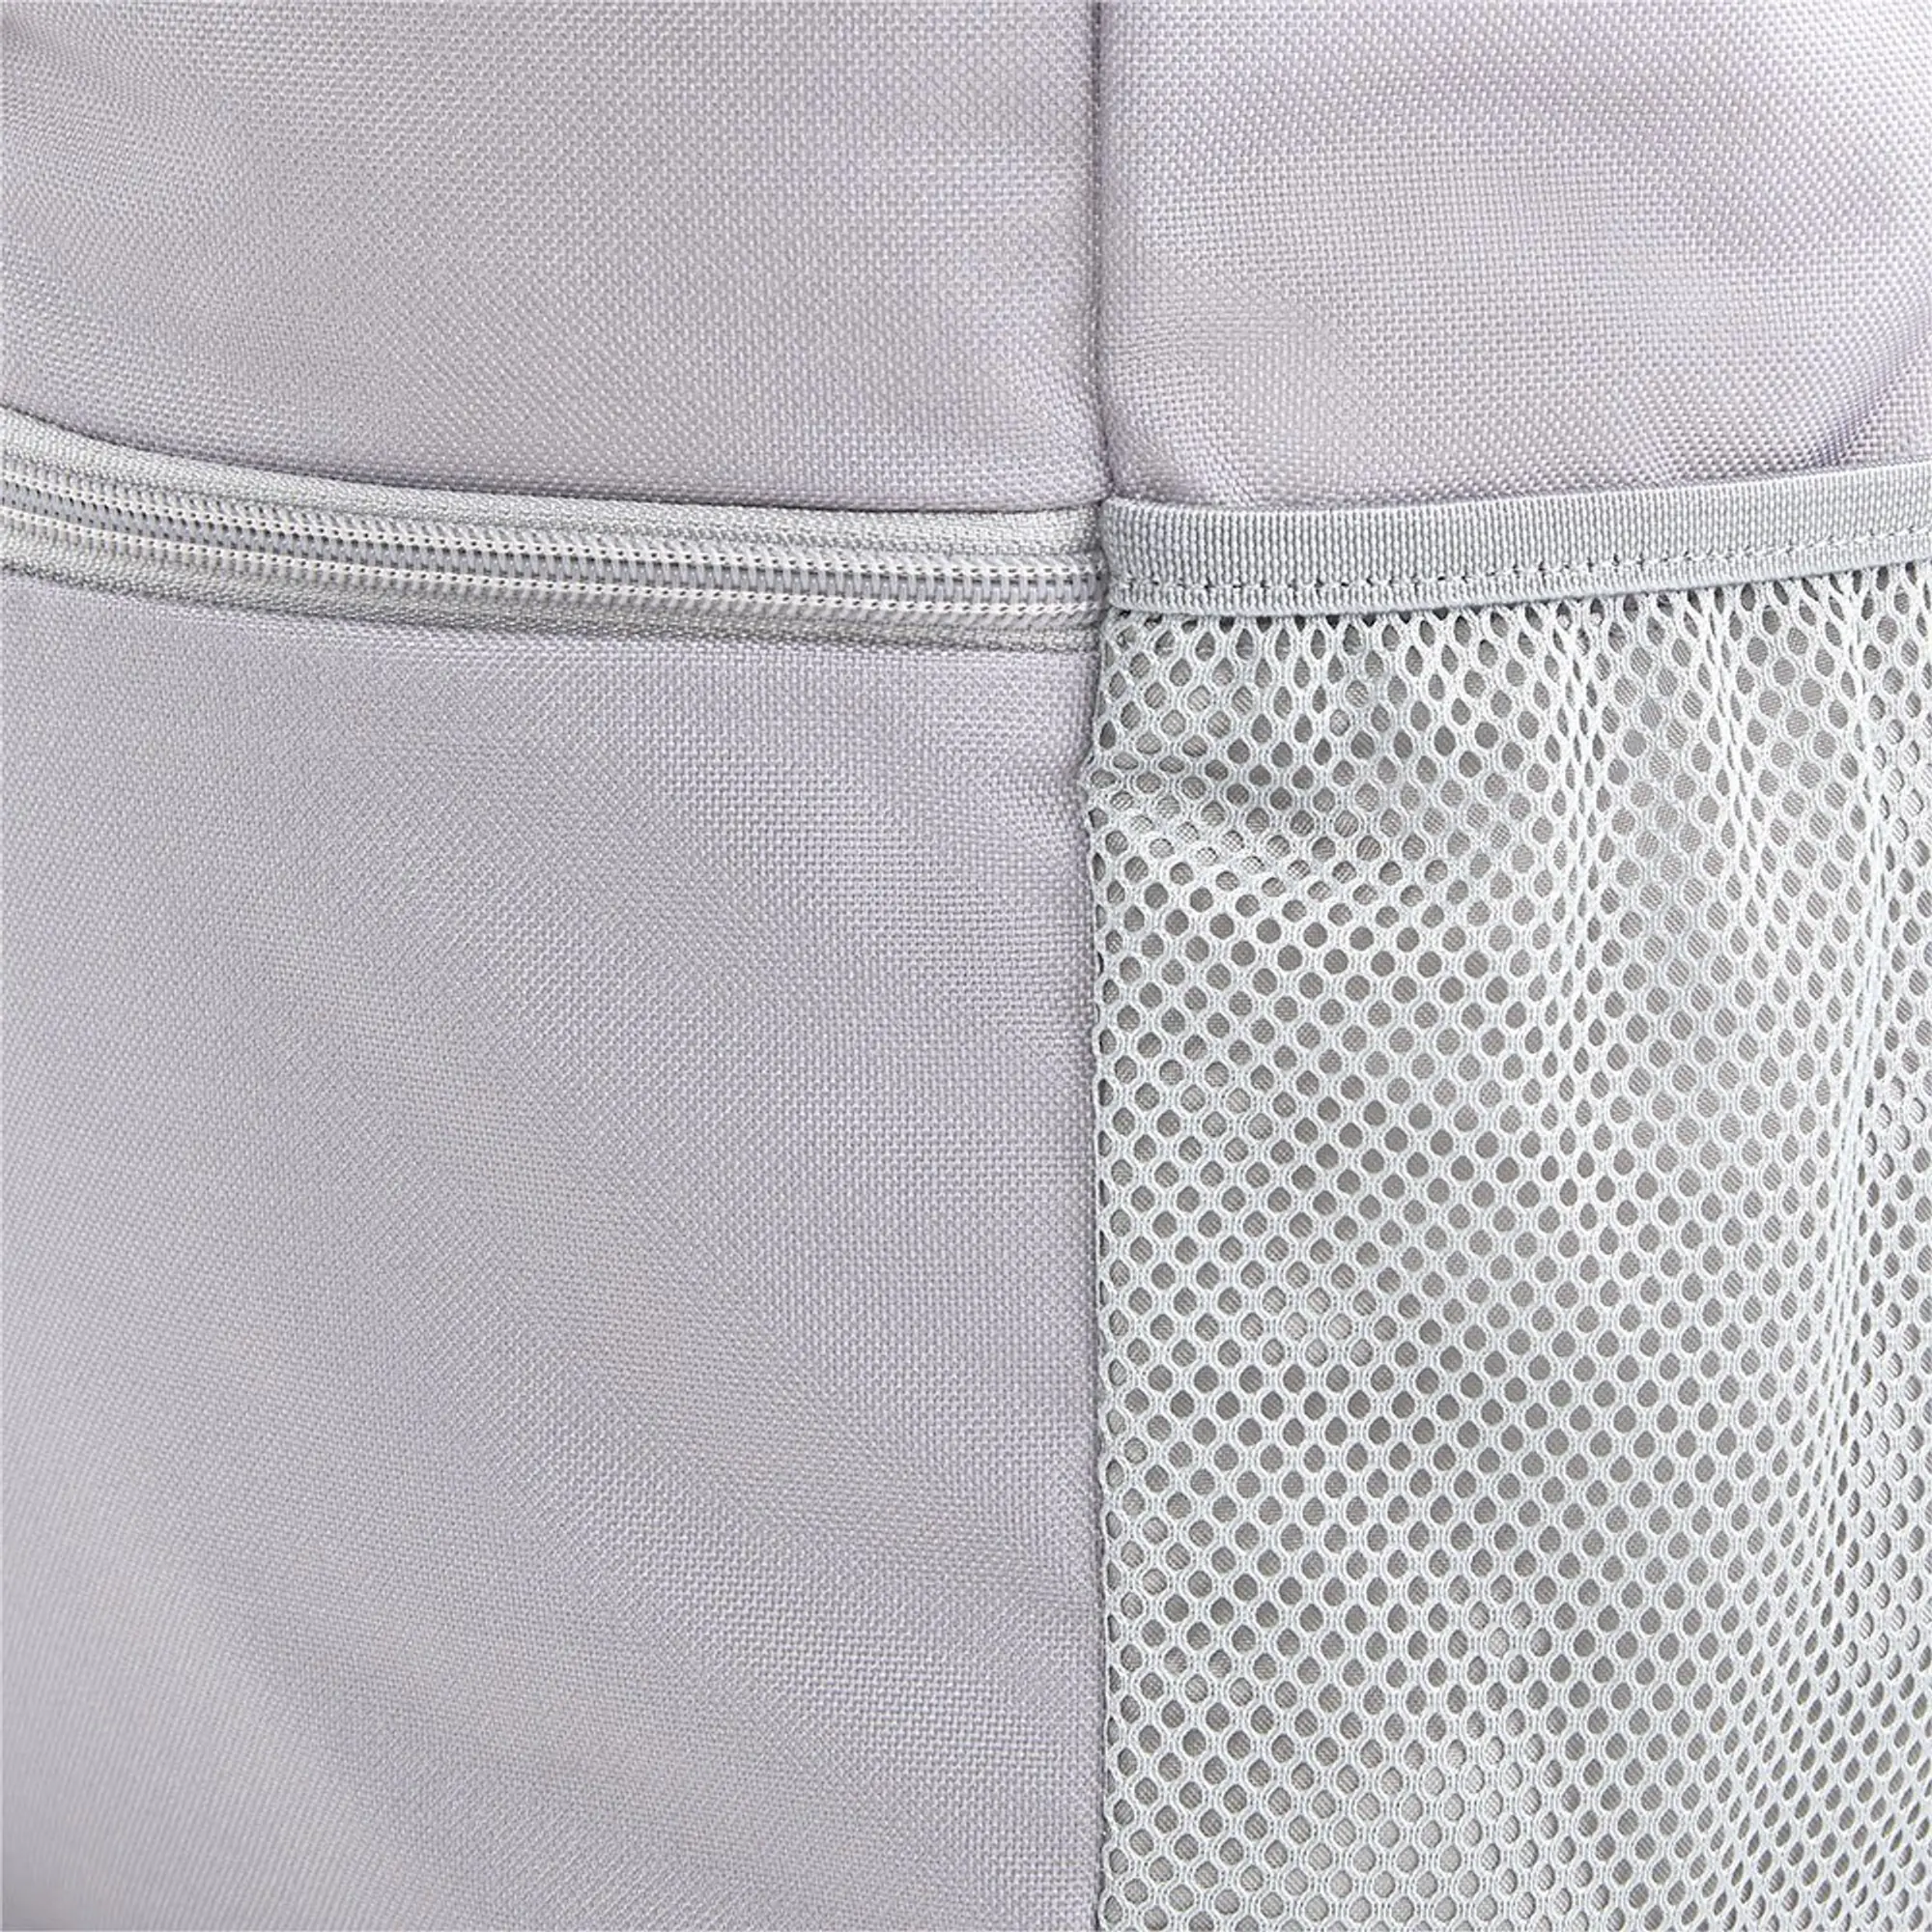 Puma Unisex Style Backpack - Grey - One Size